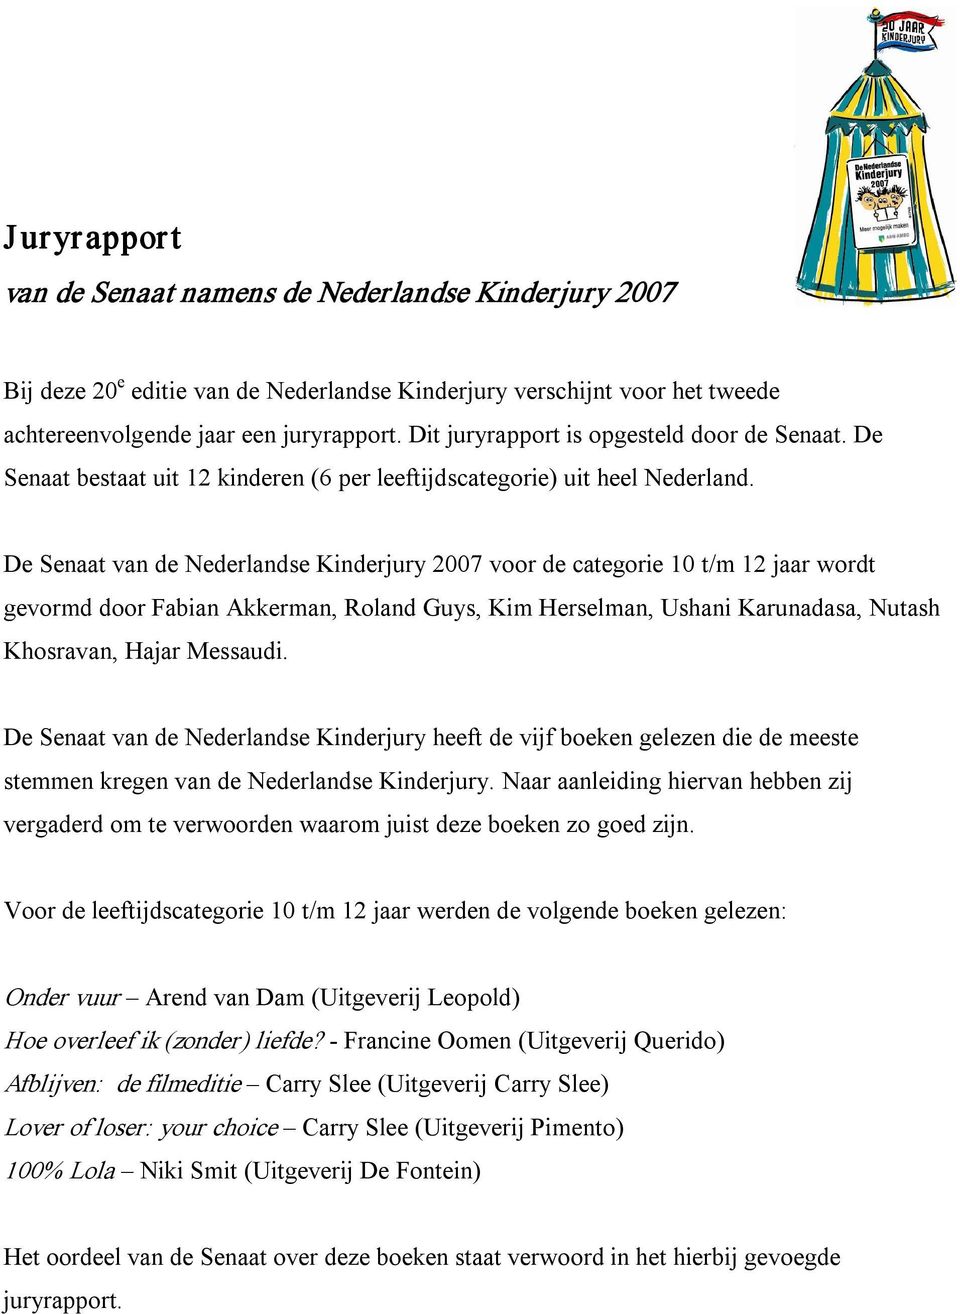 De Senaat van de Nederlandse Kinderjury 2007 voor de categorie 10 t/m 12 jaar wordt gevormd door Fabian Akkerman, Roland Guys, Kim Herselman, Ushani Karunadasa, Nutash Khosravan, Hajar Messaudi.